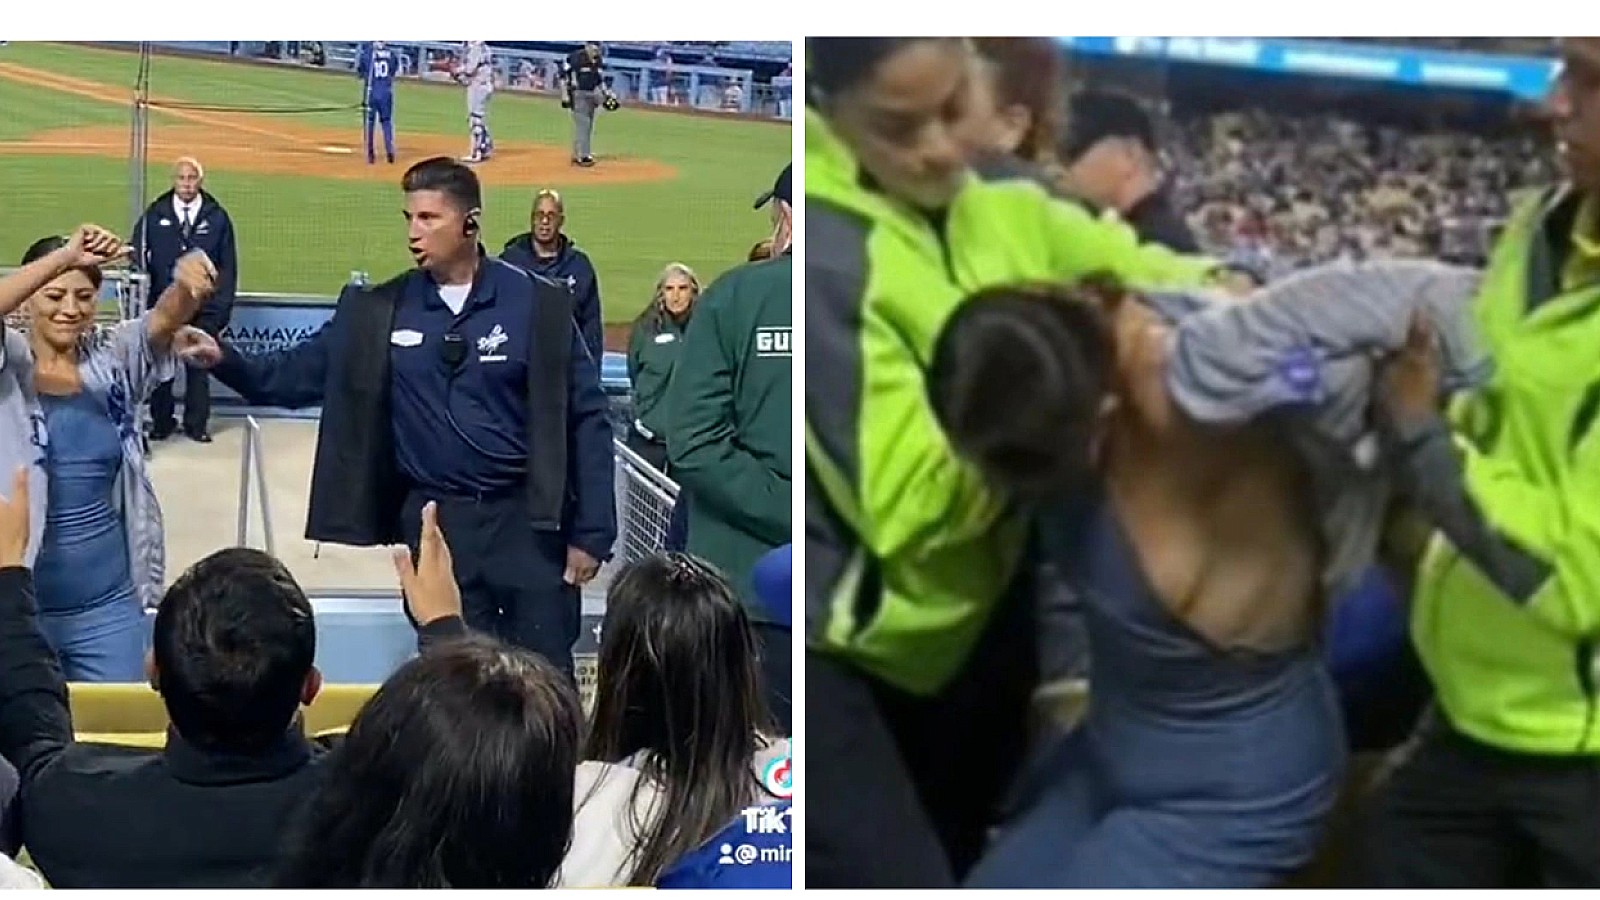 Video Viral: ¡Expulsan aficionada del Dodgers Stadium tras exhibir sus pechos!